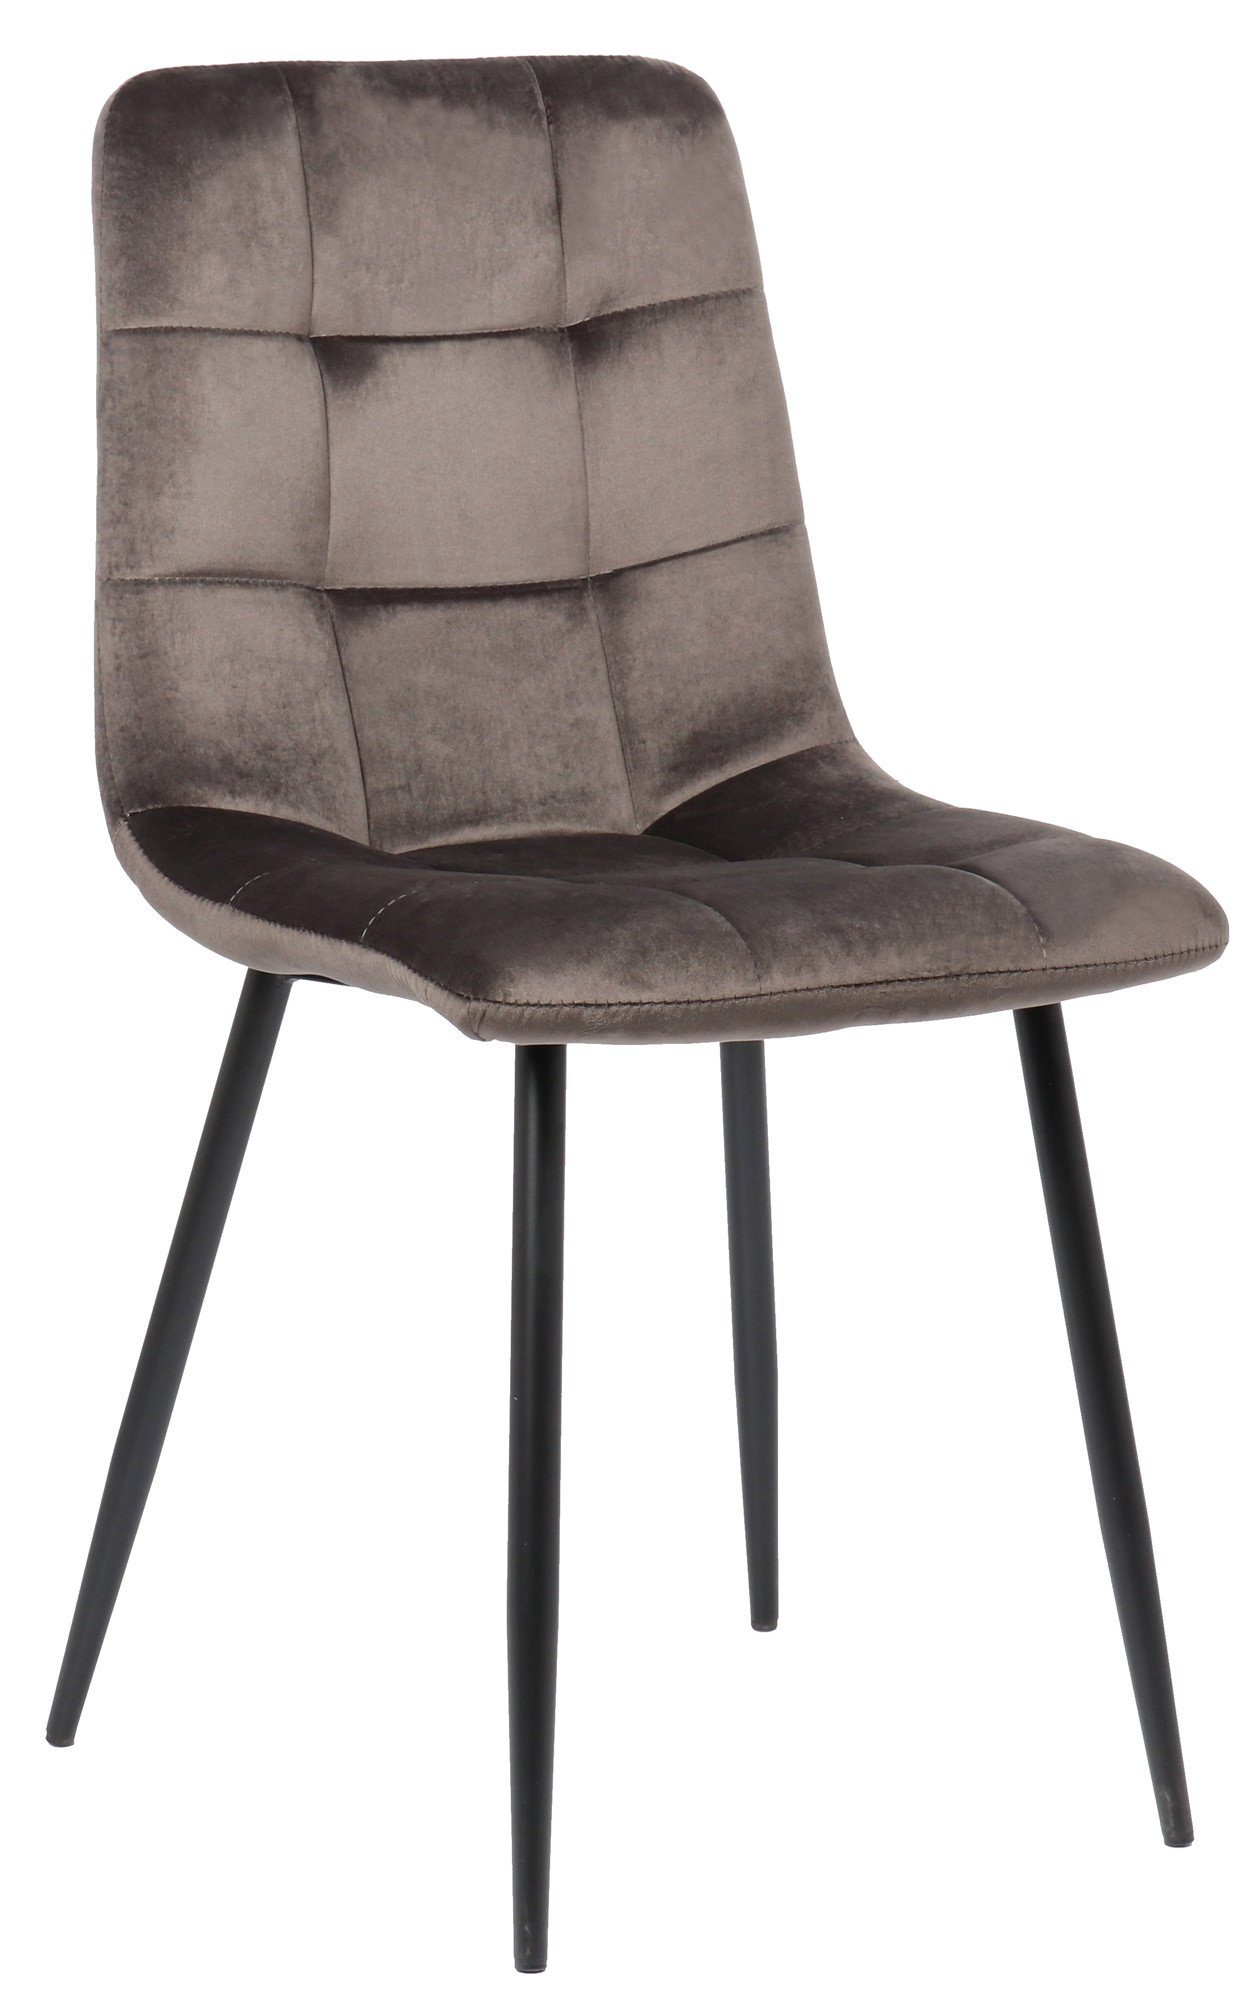 TPFLiving Esszimmerstuhl Till mit hochwertig gepolsterter Sitzfläche - Konferenzstuhl (Küchenstuhl - Esstischstuhl - Wohnzimmerstuhl - Polsterstuhl), Gestell: Metall schwarz - Sitzfläche: Samt grau